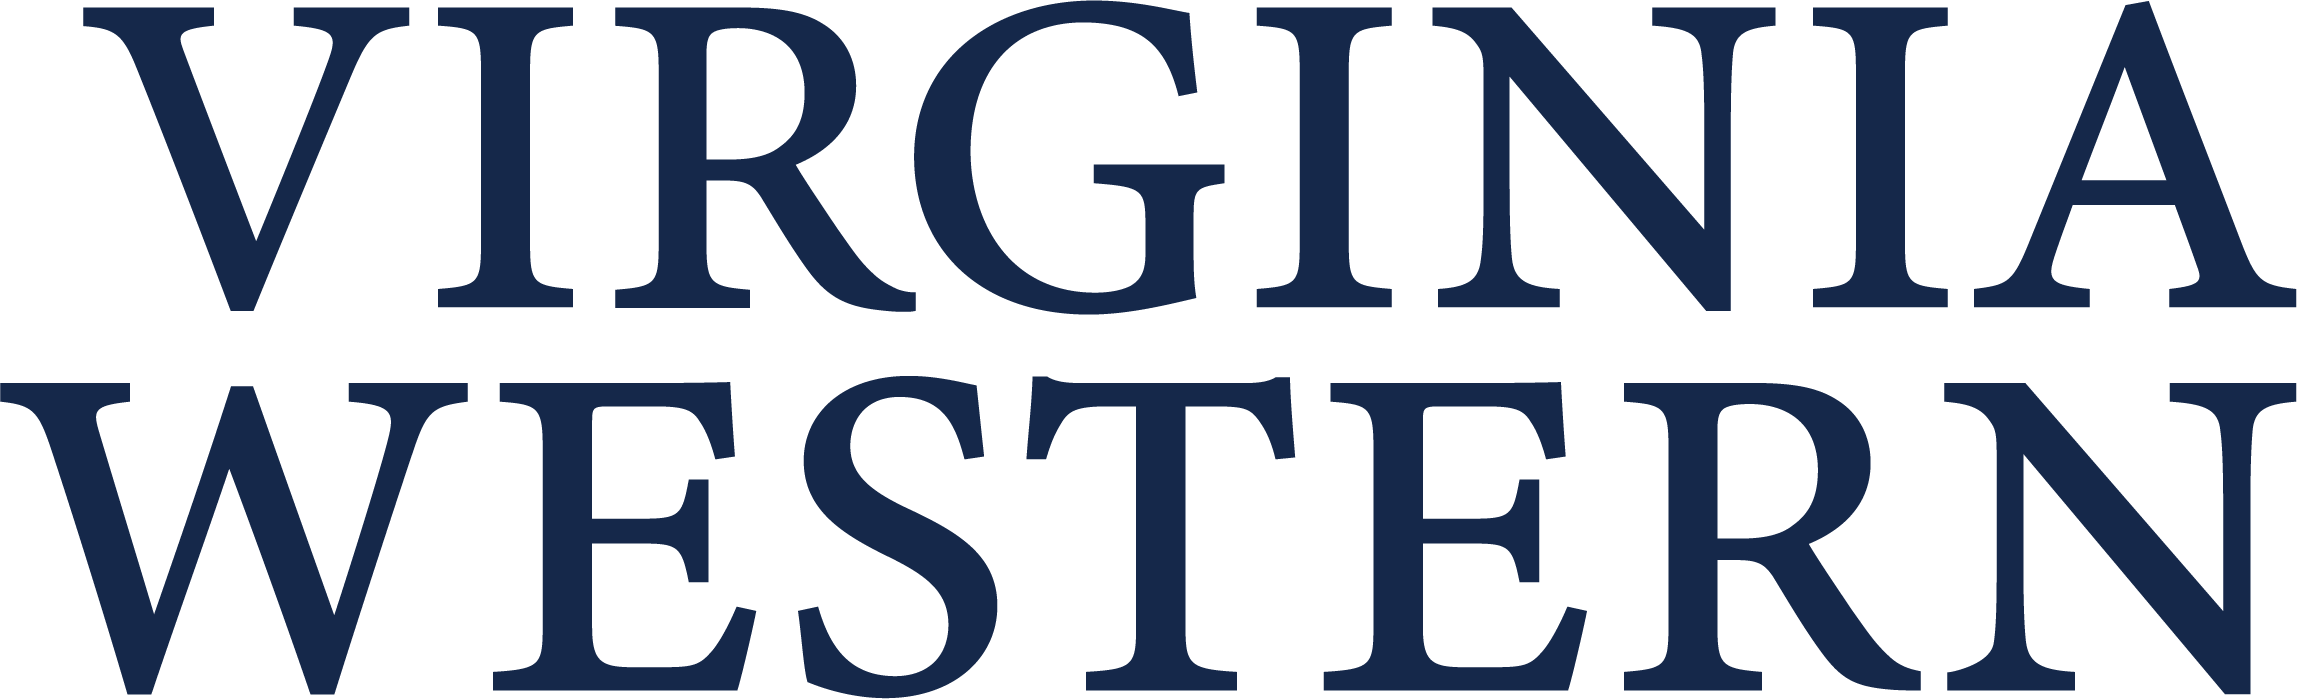 Virginia Western Logo Blue